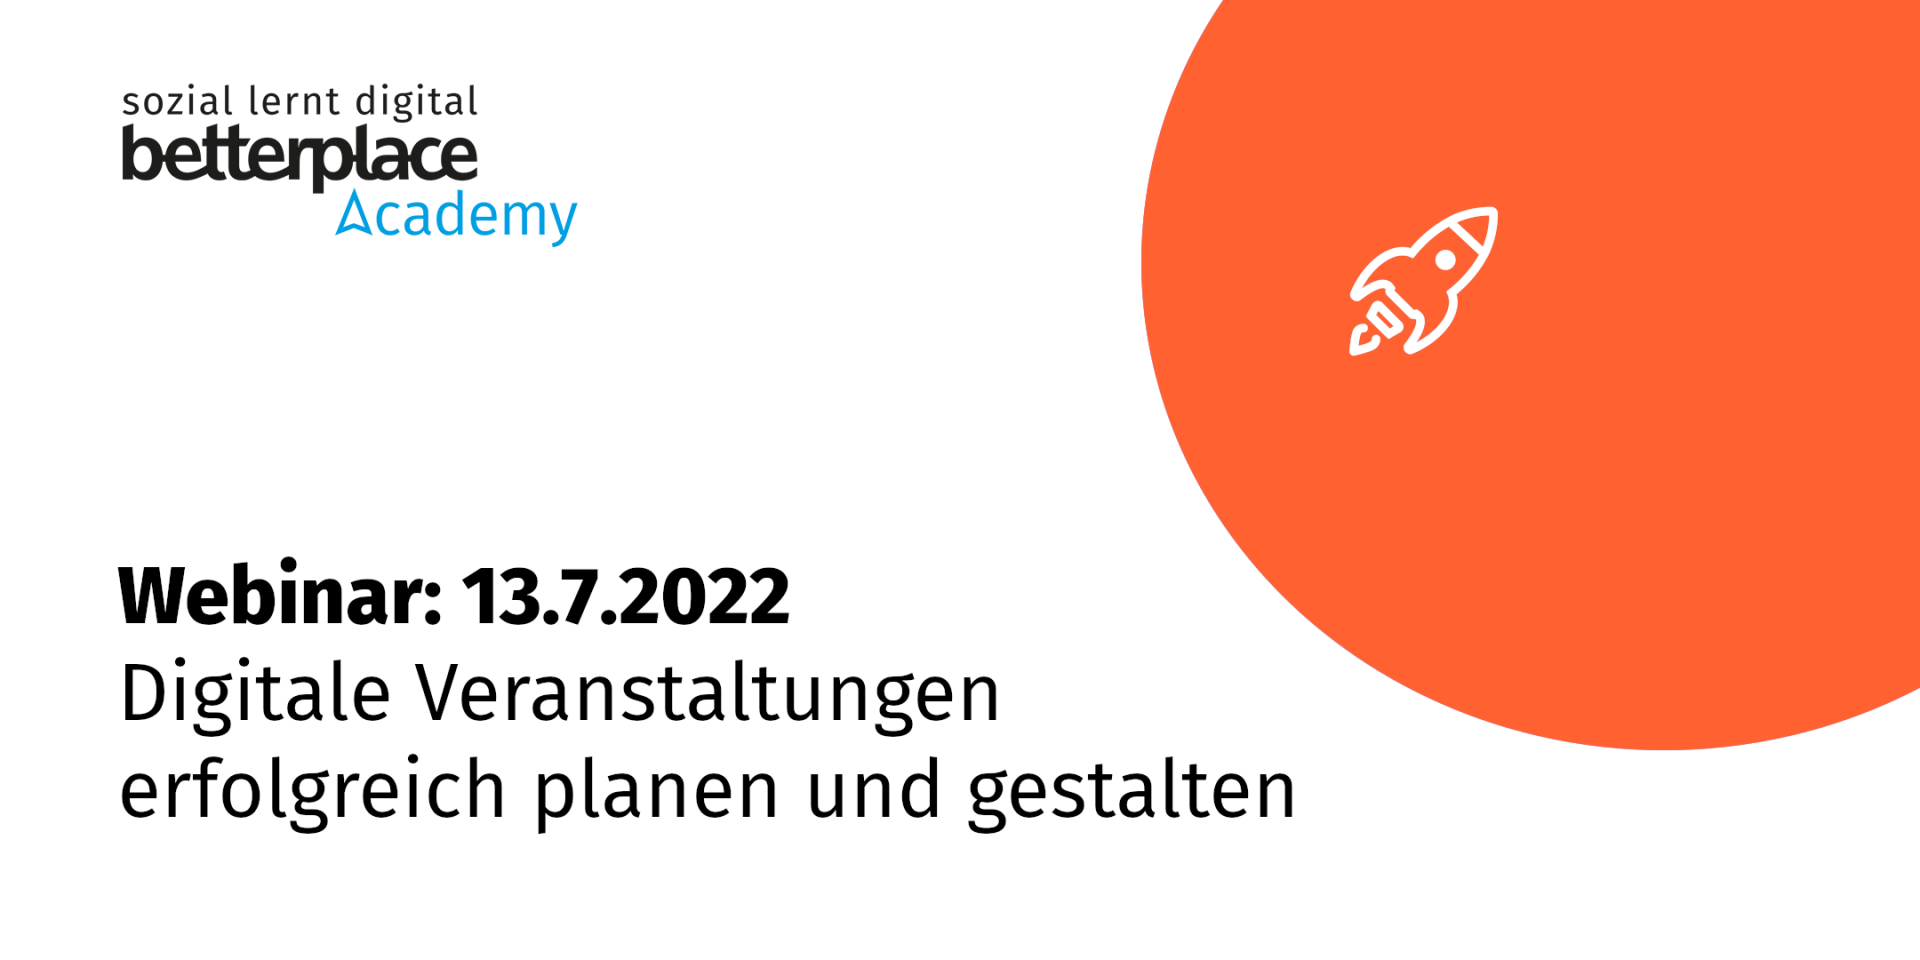 Orangener Planet mit weißer Rakete und Logo der betterplace academy sowie Text: Webinar am 13.7. zu digitalen Veranstaltungen